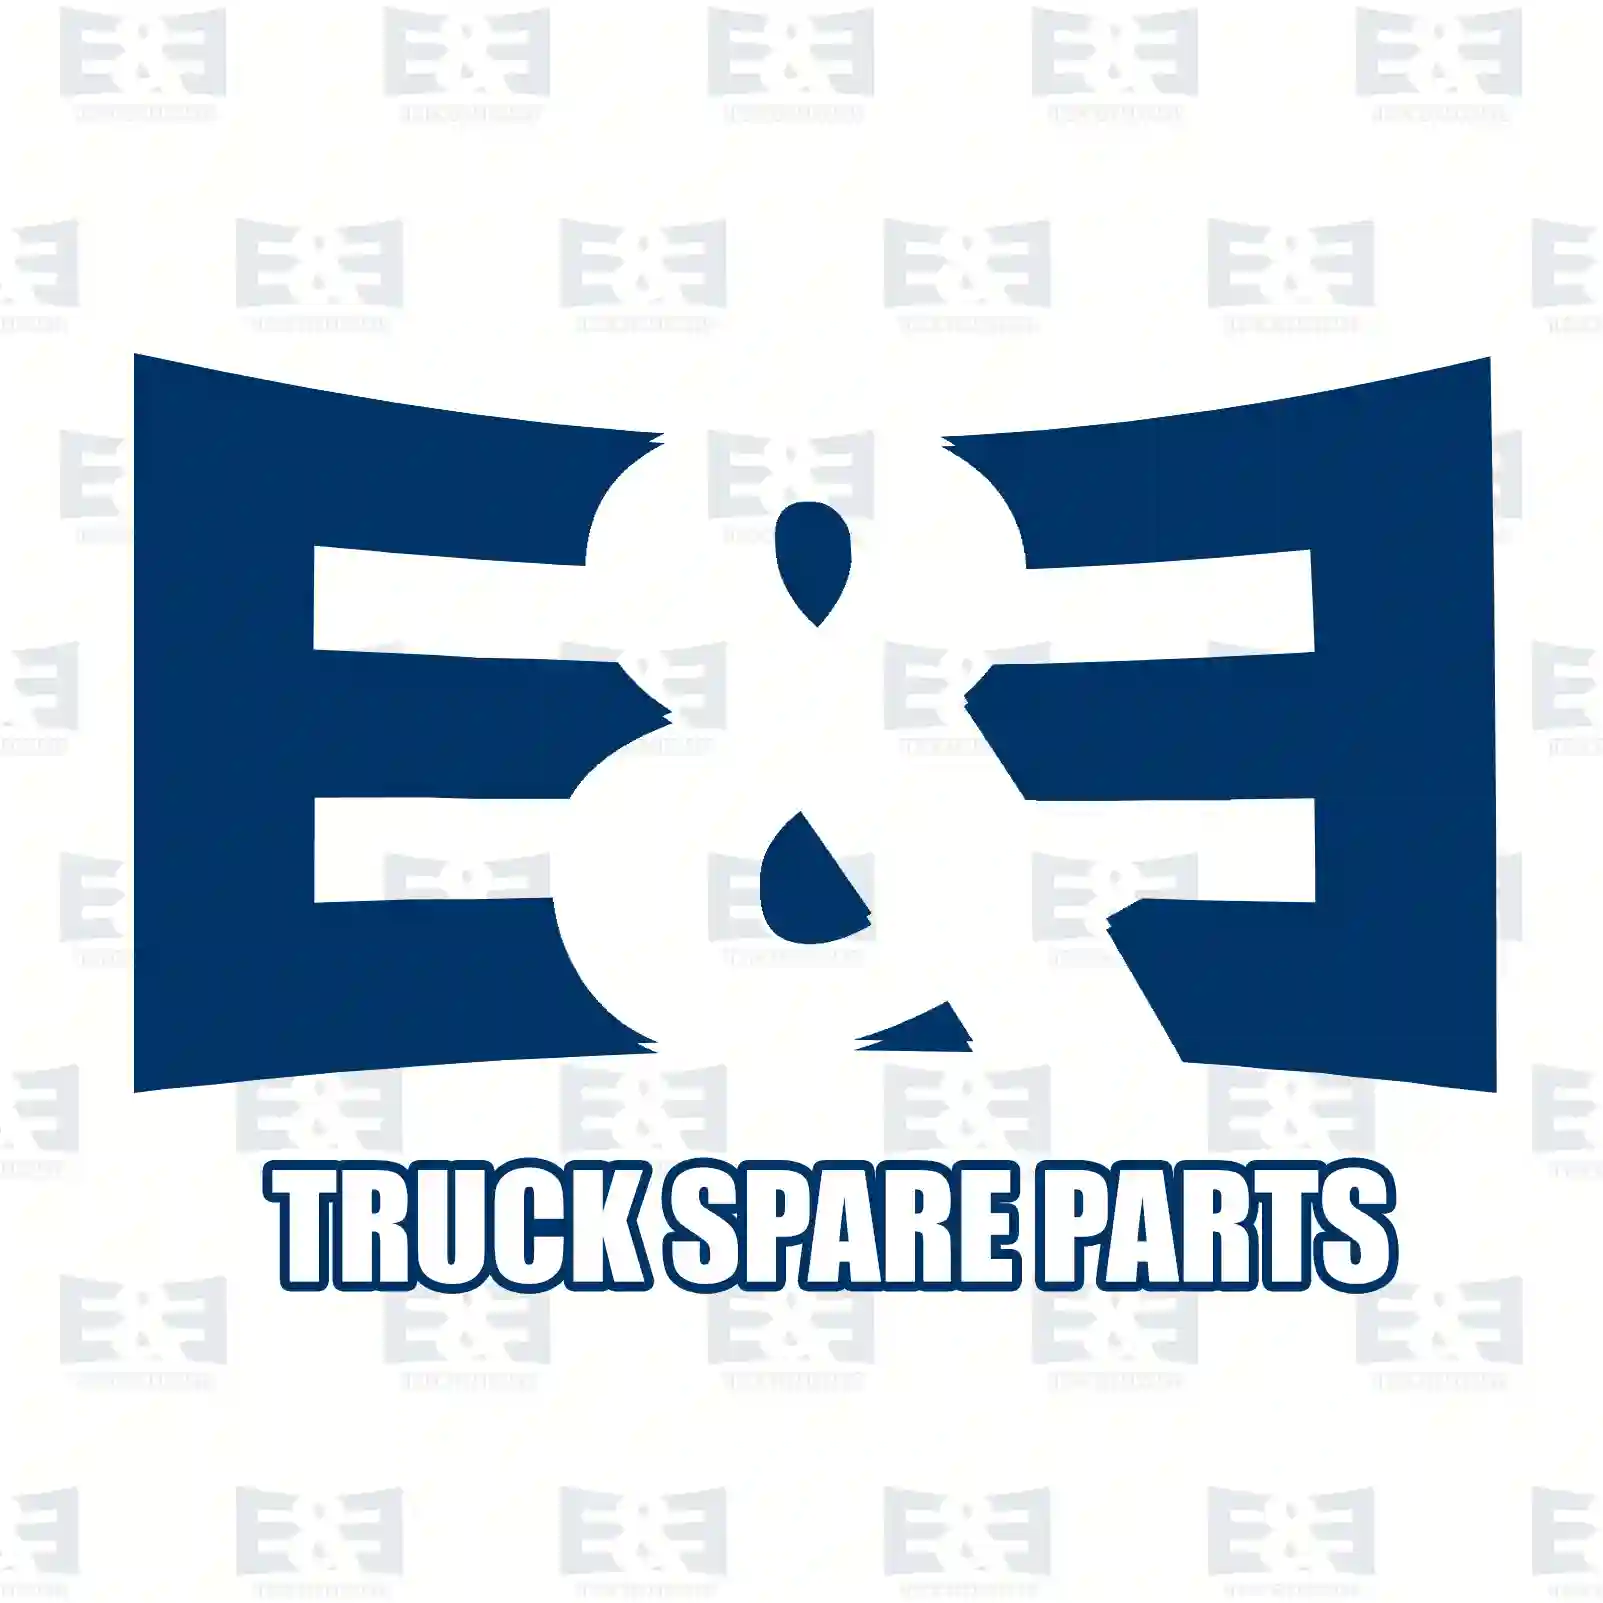 Glow plug, 2E2207603, 7701069730, 9110724, 95508494, 11065-00Q0D, 11065-00QAA, 11065-00QAF, 11065-00QAG, 11065-00QOD, 11065-BN701, 1214082, 4402724, 7701069730, 8200490950 ||  2E2207603 E&E Truck Spare Parts | Truck Spare Parts, Auotomotive Spare Parts Glow plug, 2E2207603, 7701069730, 9110724, 95508494, 11065-00Q0D, 11065-00QAA, 11065-00QAF, 11065-00QAG, 11065-00QOD, 11065-BN701, 1214082, 4402724, 7701069730, 8200490950 ||  2E2207603 E&E Truck Spare Parts | Truck Spare Parts, Auotomotive Spare Parts